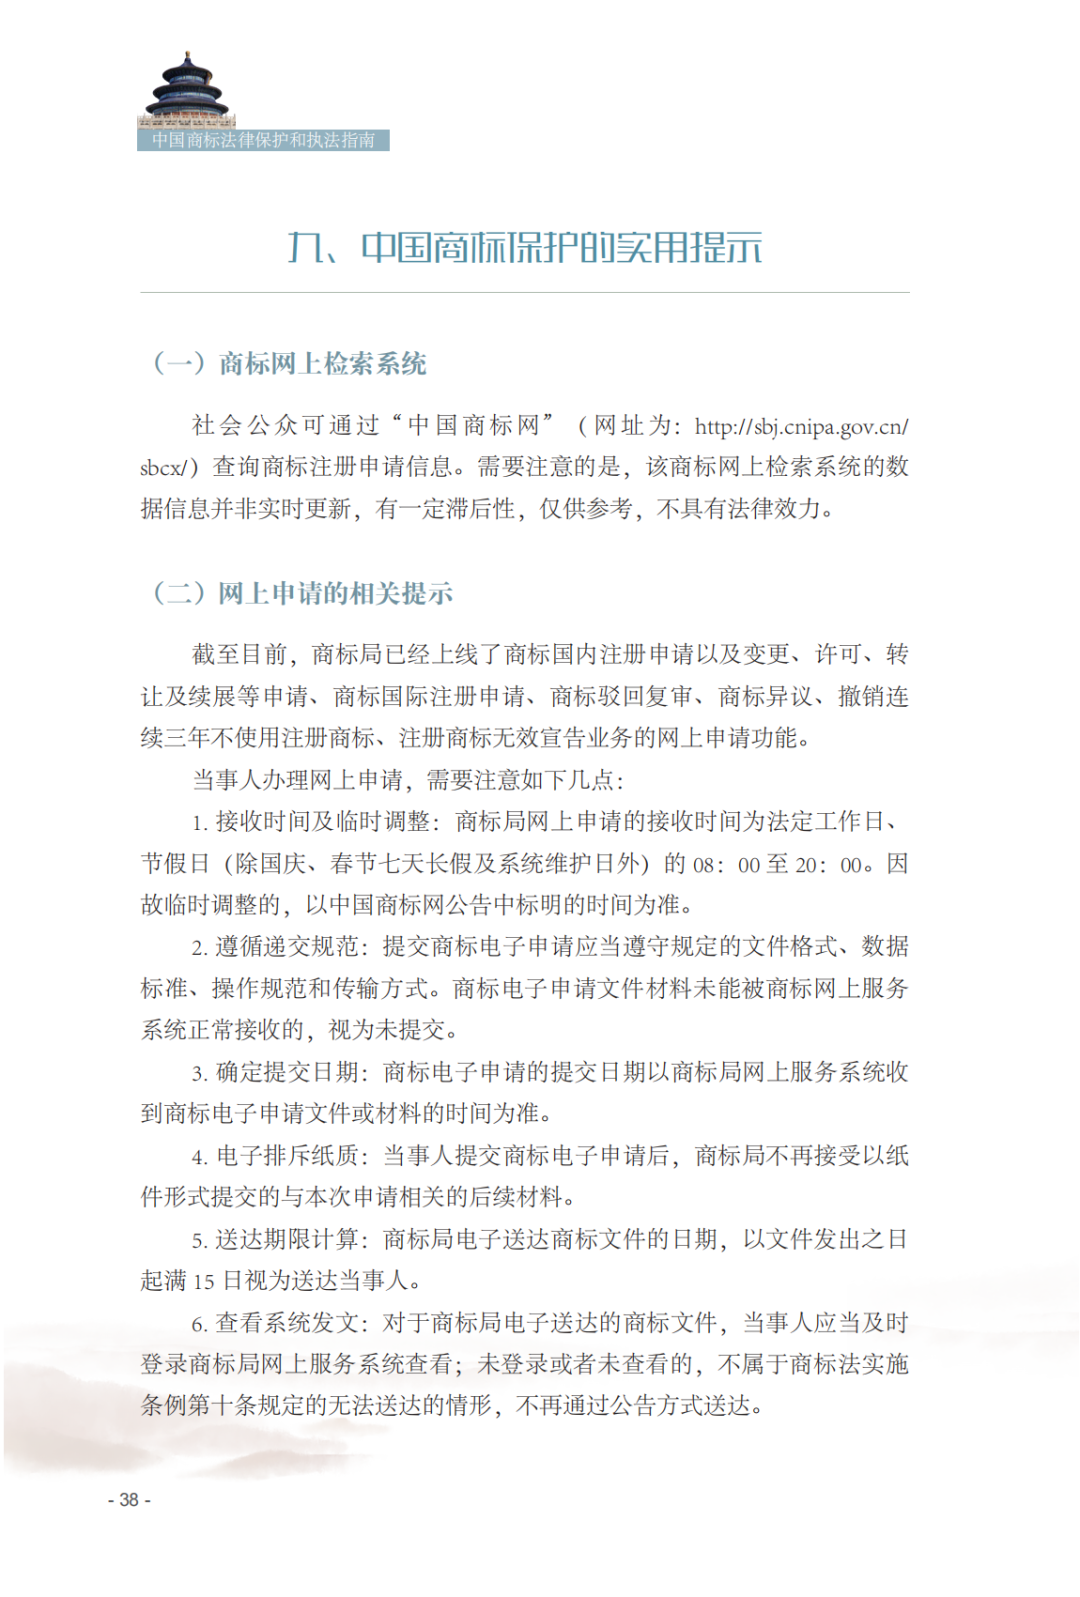 国知局发布《中国商标法律保护和执法指南》│ 附全文